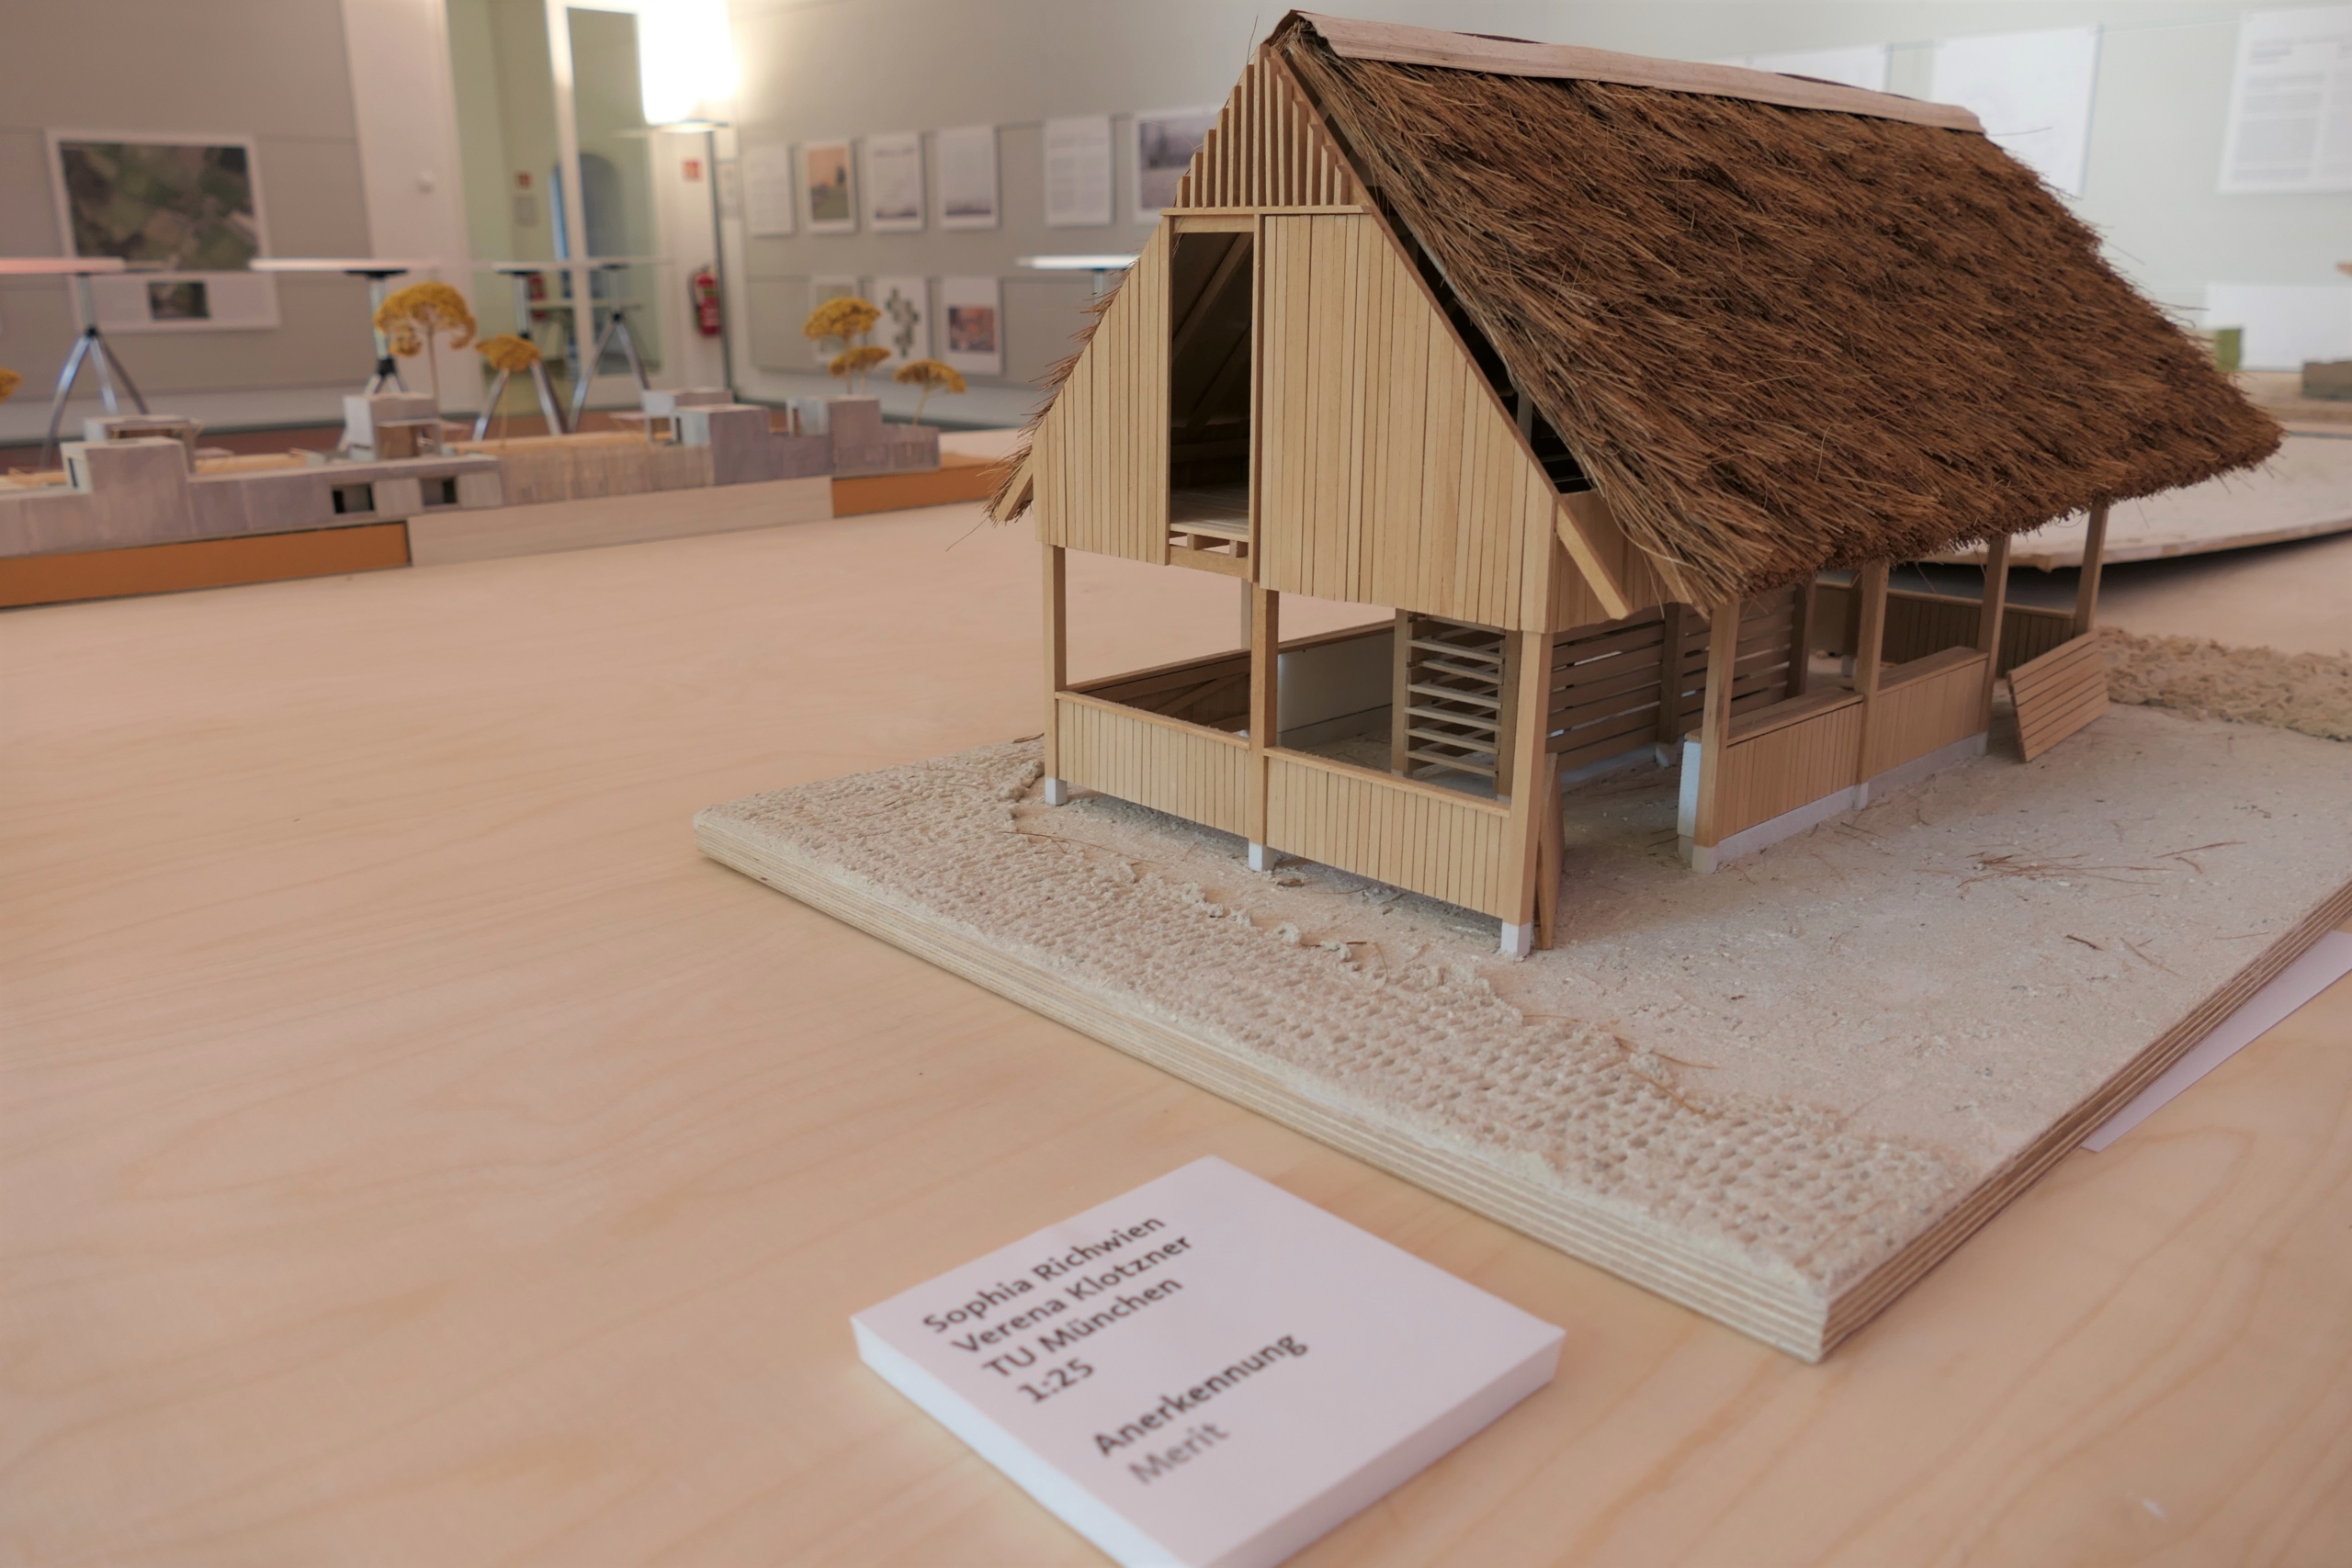 Blick in die Ausstellung "Architektur für Schweine" - Foto: Melina Beierle/ Architektenkammer NRW